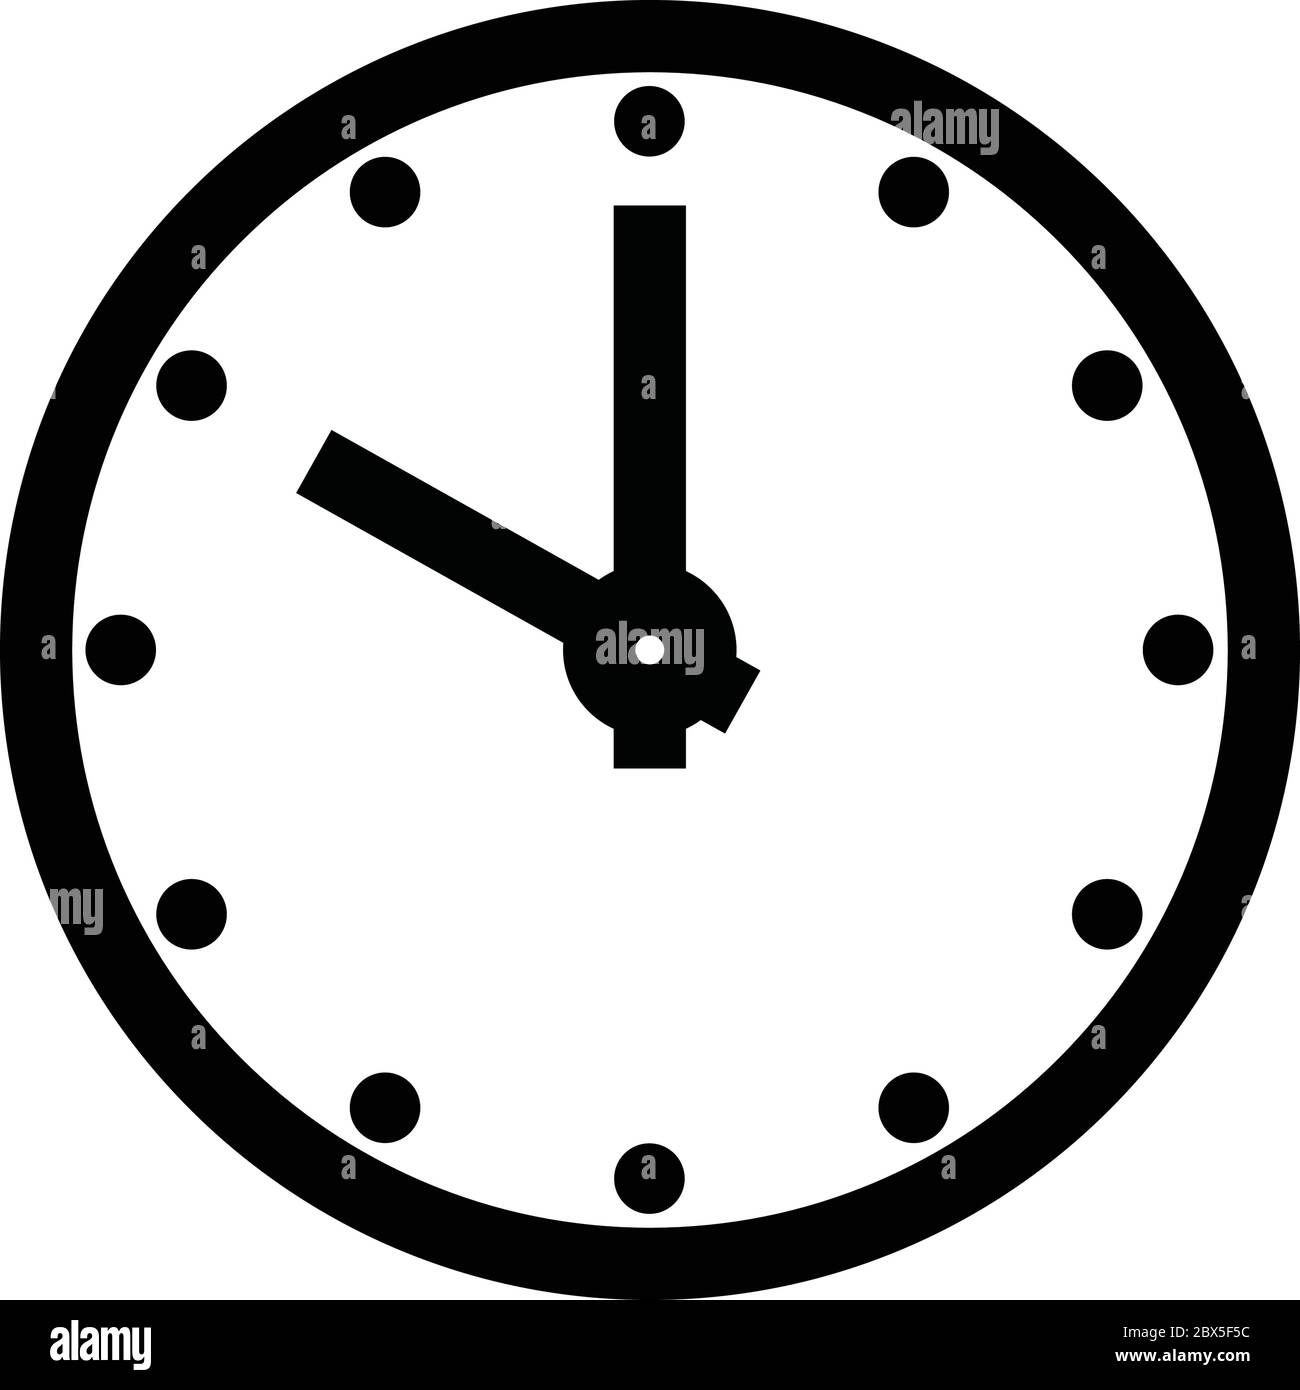 Basic clock face Banque de photographies et d'images à haute résolution -  Alamy